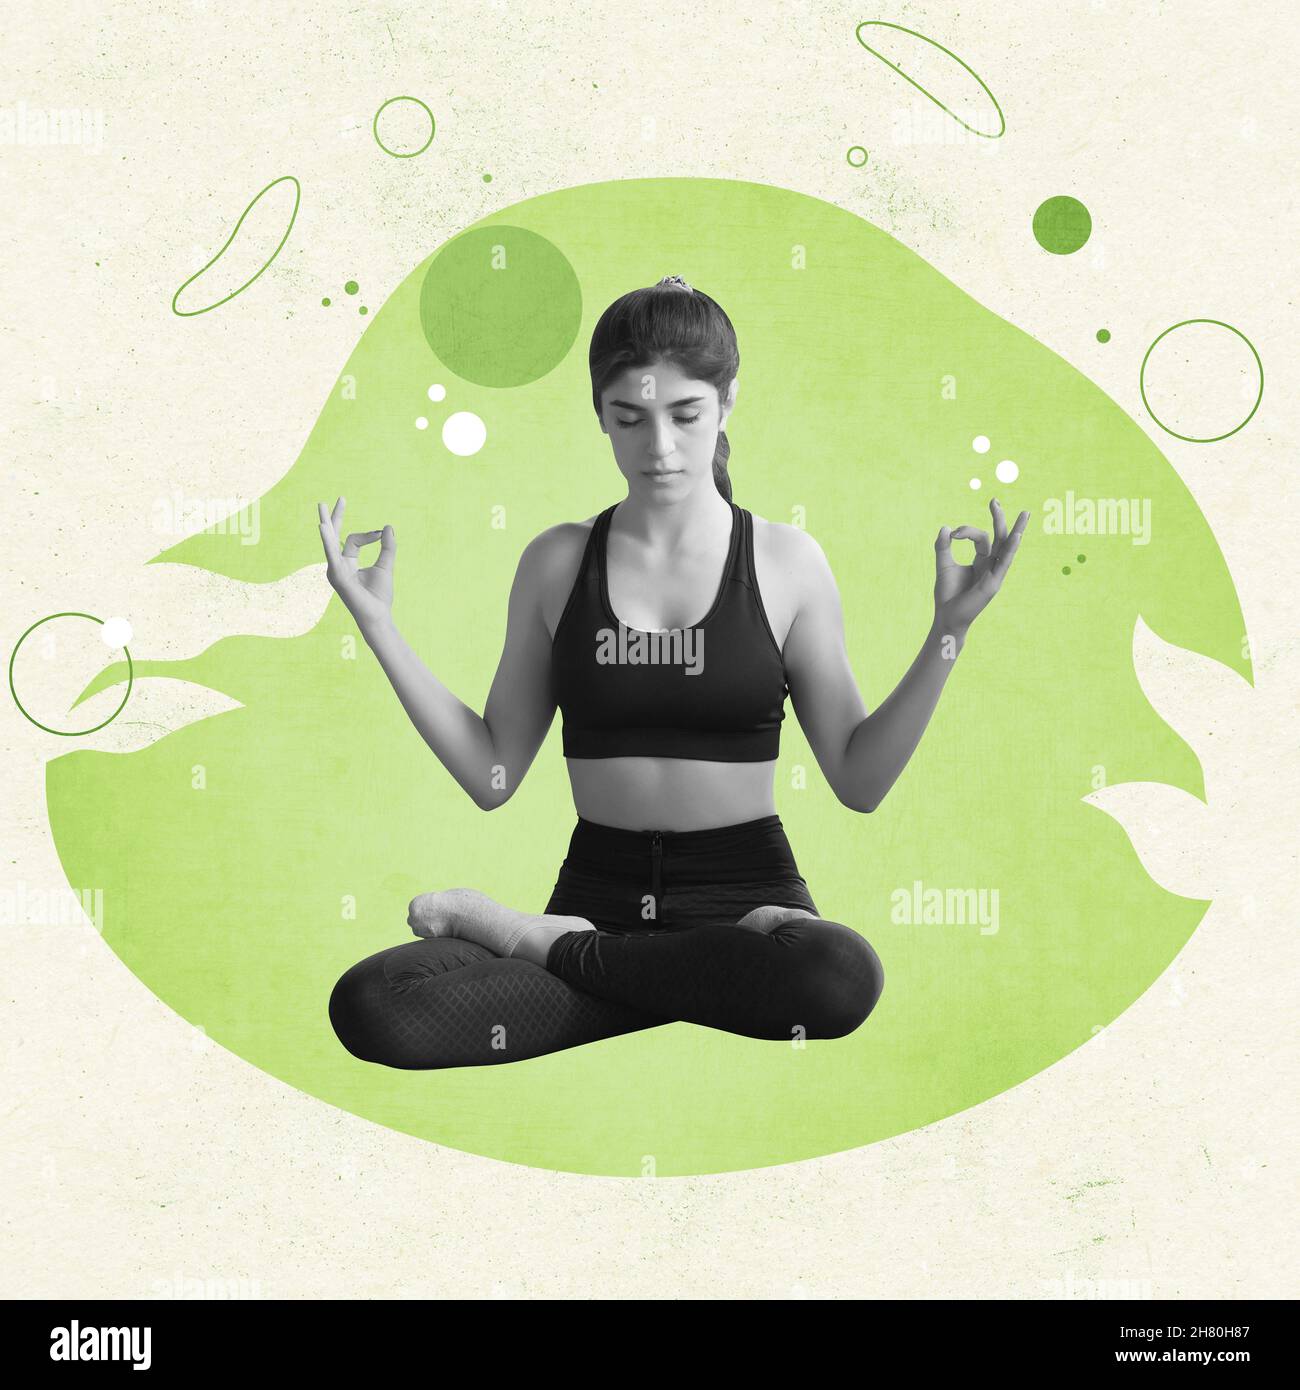 Yoga poses for a healthy pregnancy.- प्रेगनेंसी में किए जाने वाले योगासन और  उनके लाभ। | HealthShots Hindi